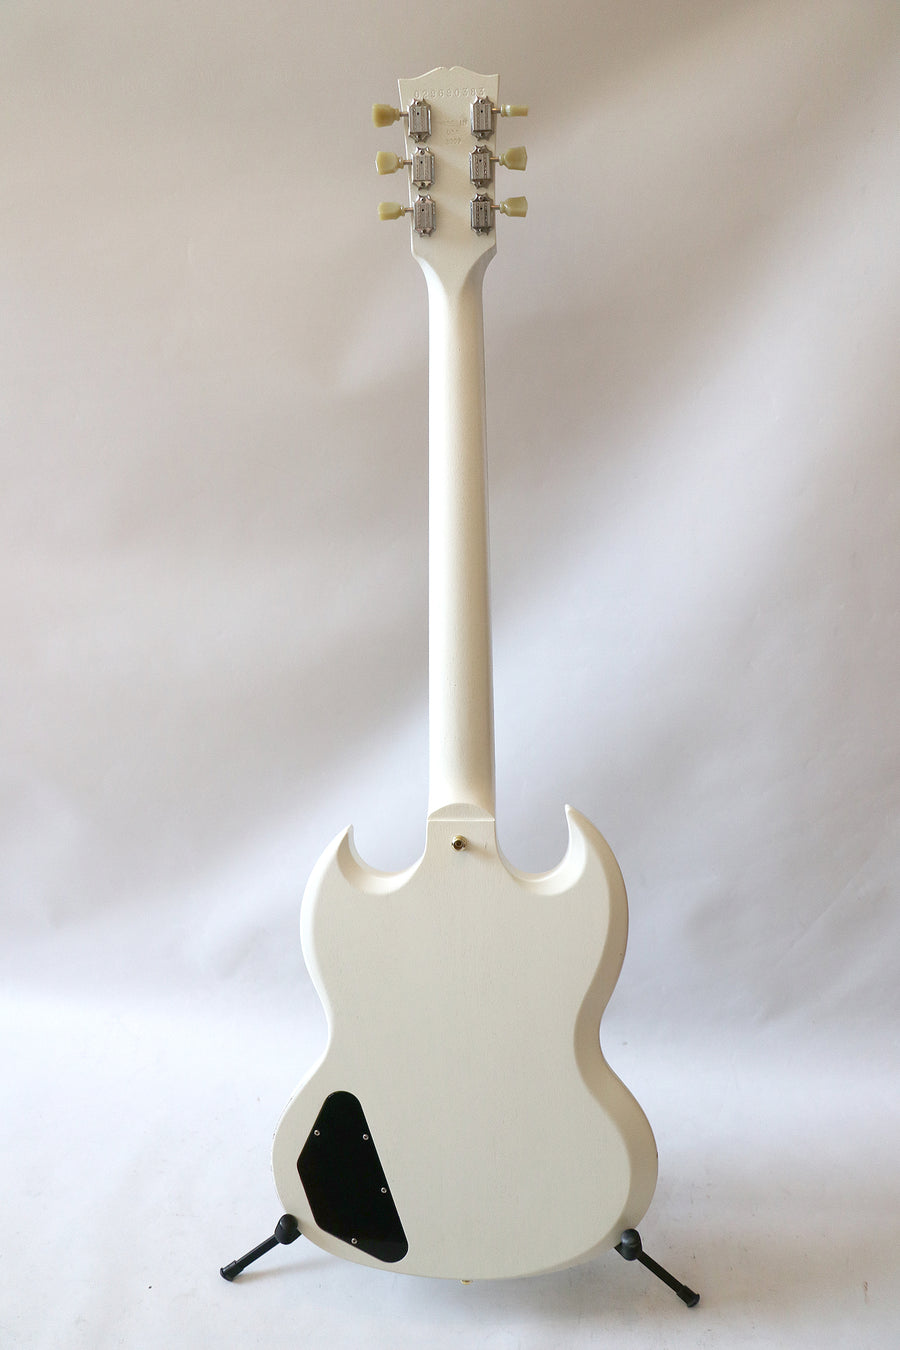 Gibson ES-335 Sunburst 2004